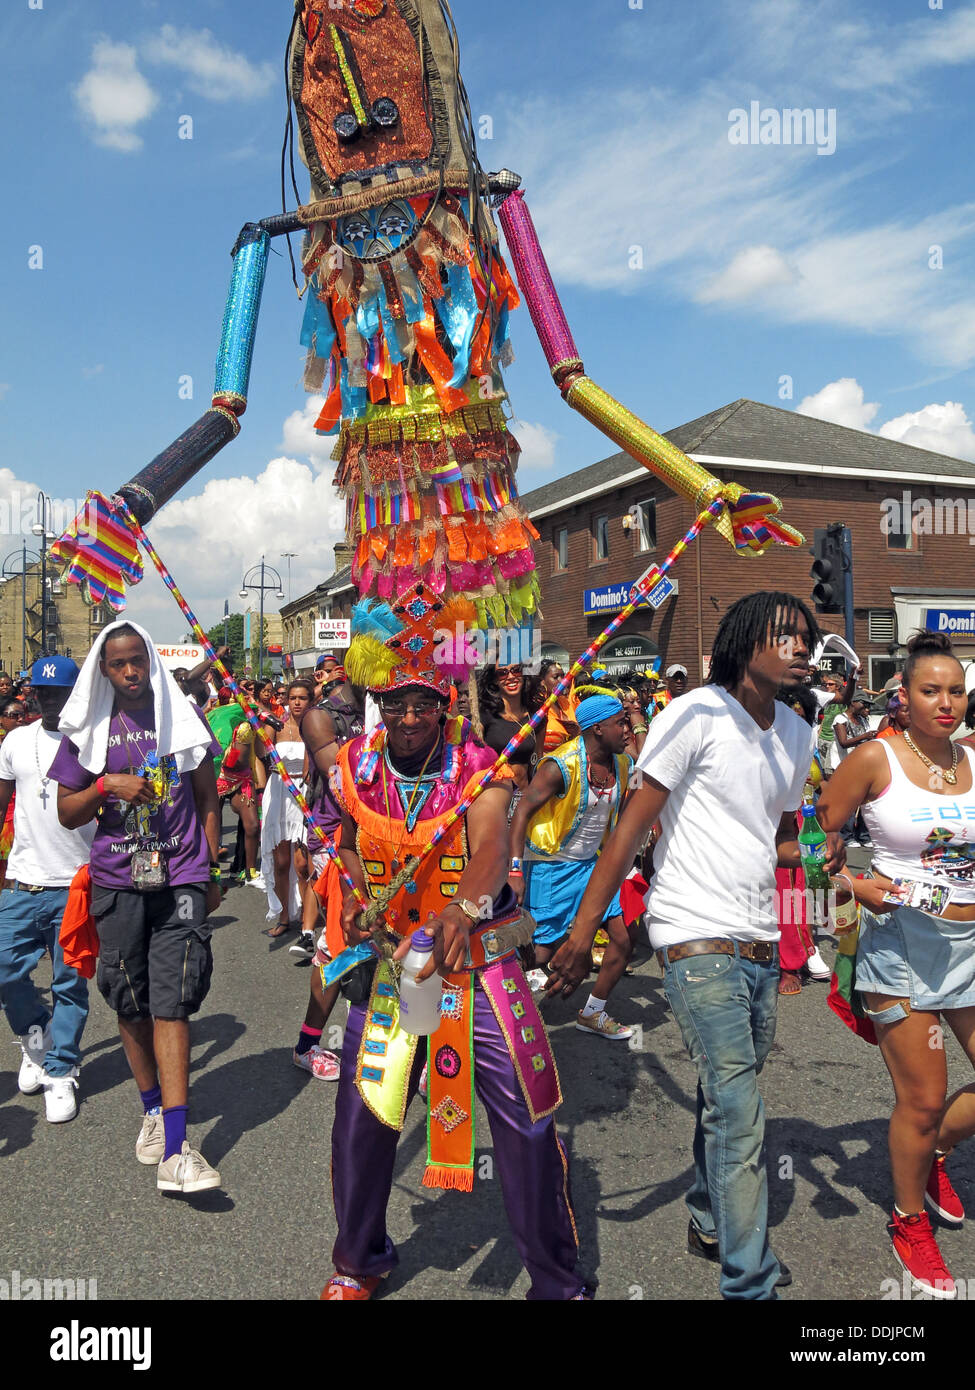 Danseurs costumés du Carnaval de Huddersfield 2013, défilé des Caraïbes africaines, fête de rue, nourriture, musique, danse Banque D'Images